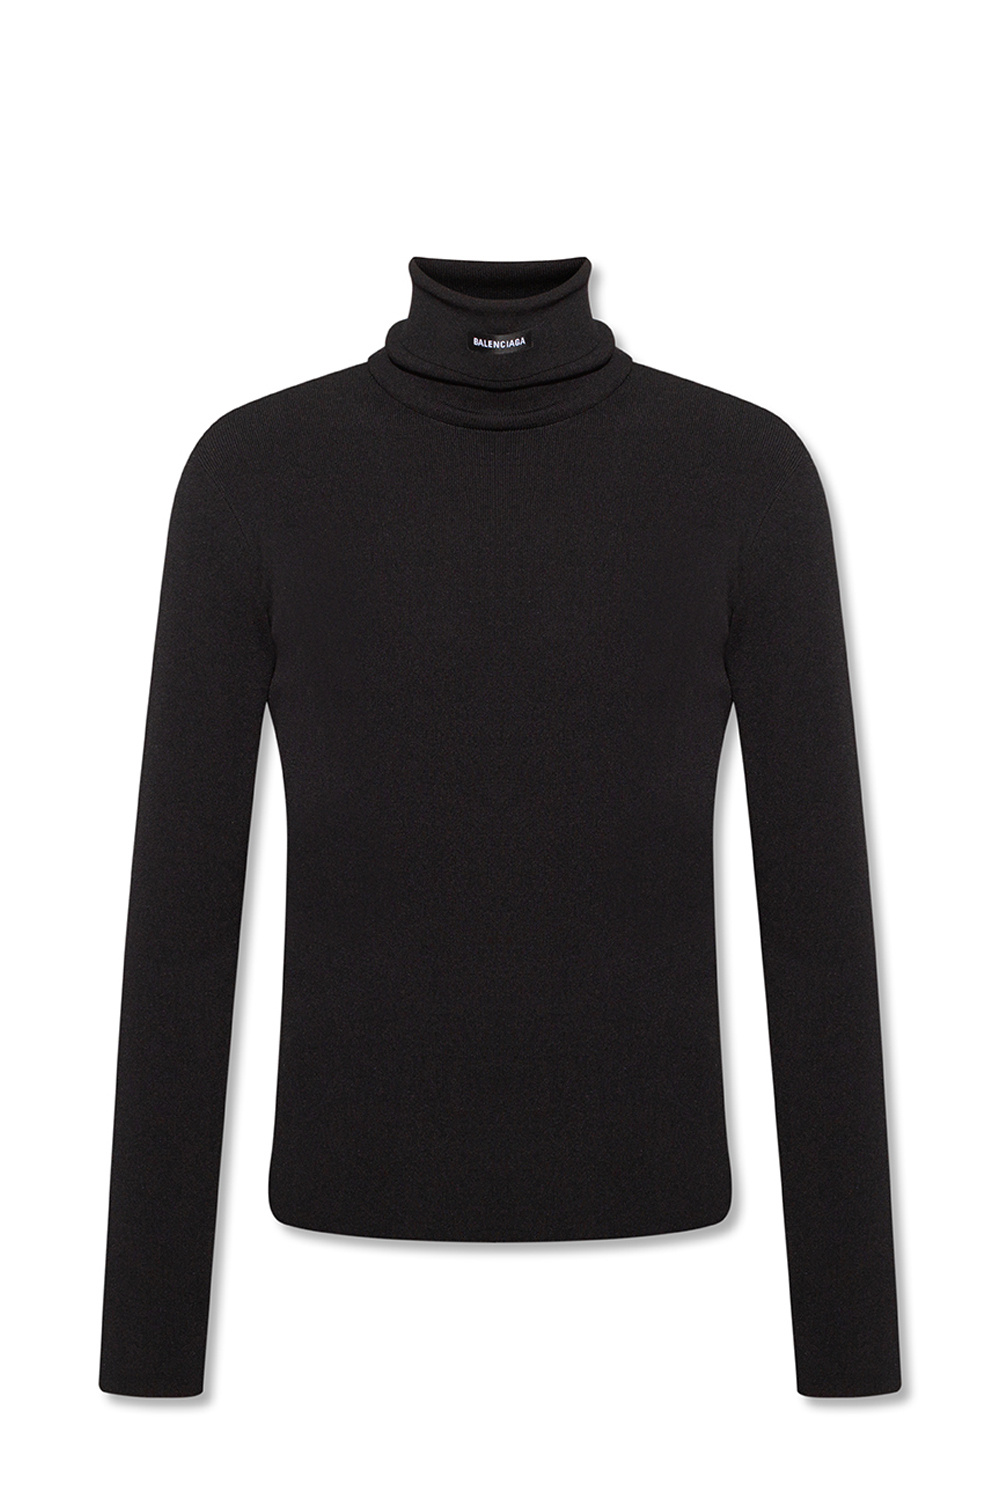 Louis Vuitton Shoulder Detail Turtleneck Sweater - Vitkac shop online